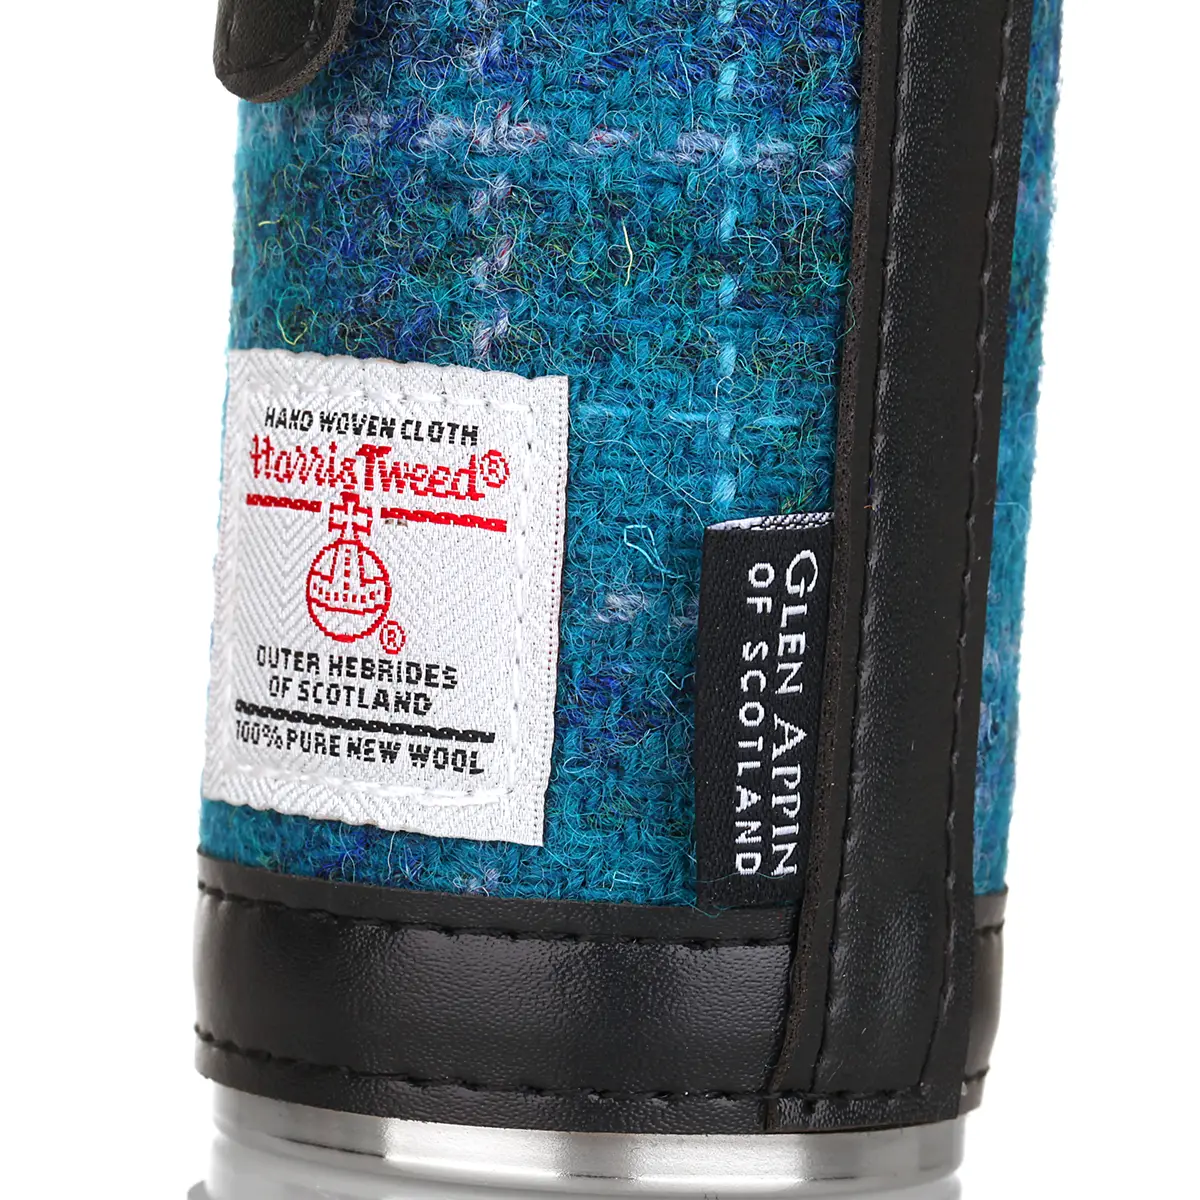 Harris Tweed Hunting Flask / Campingflasche in Sea Blue Check Tartan